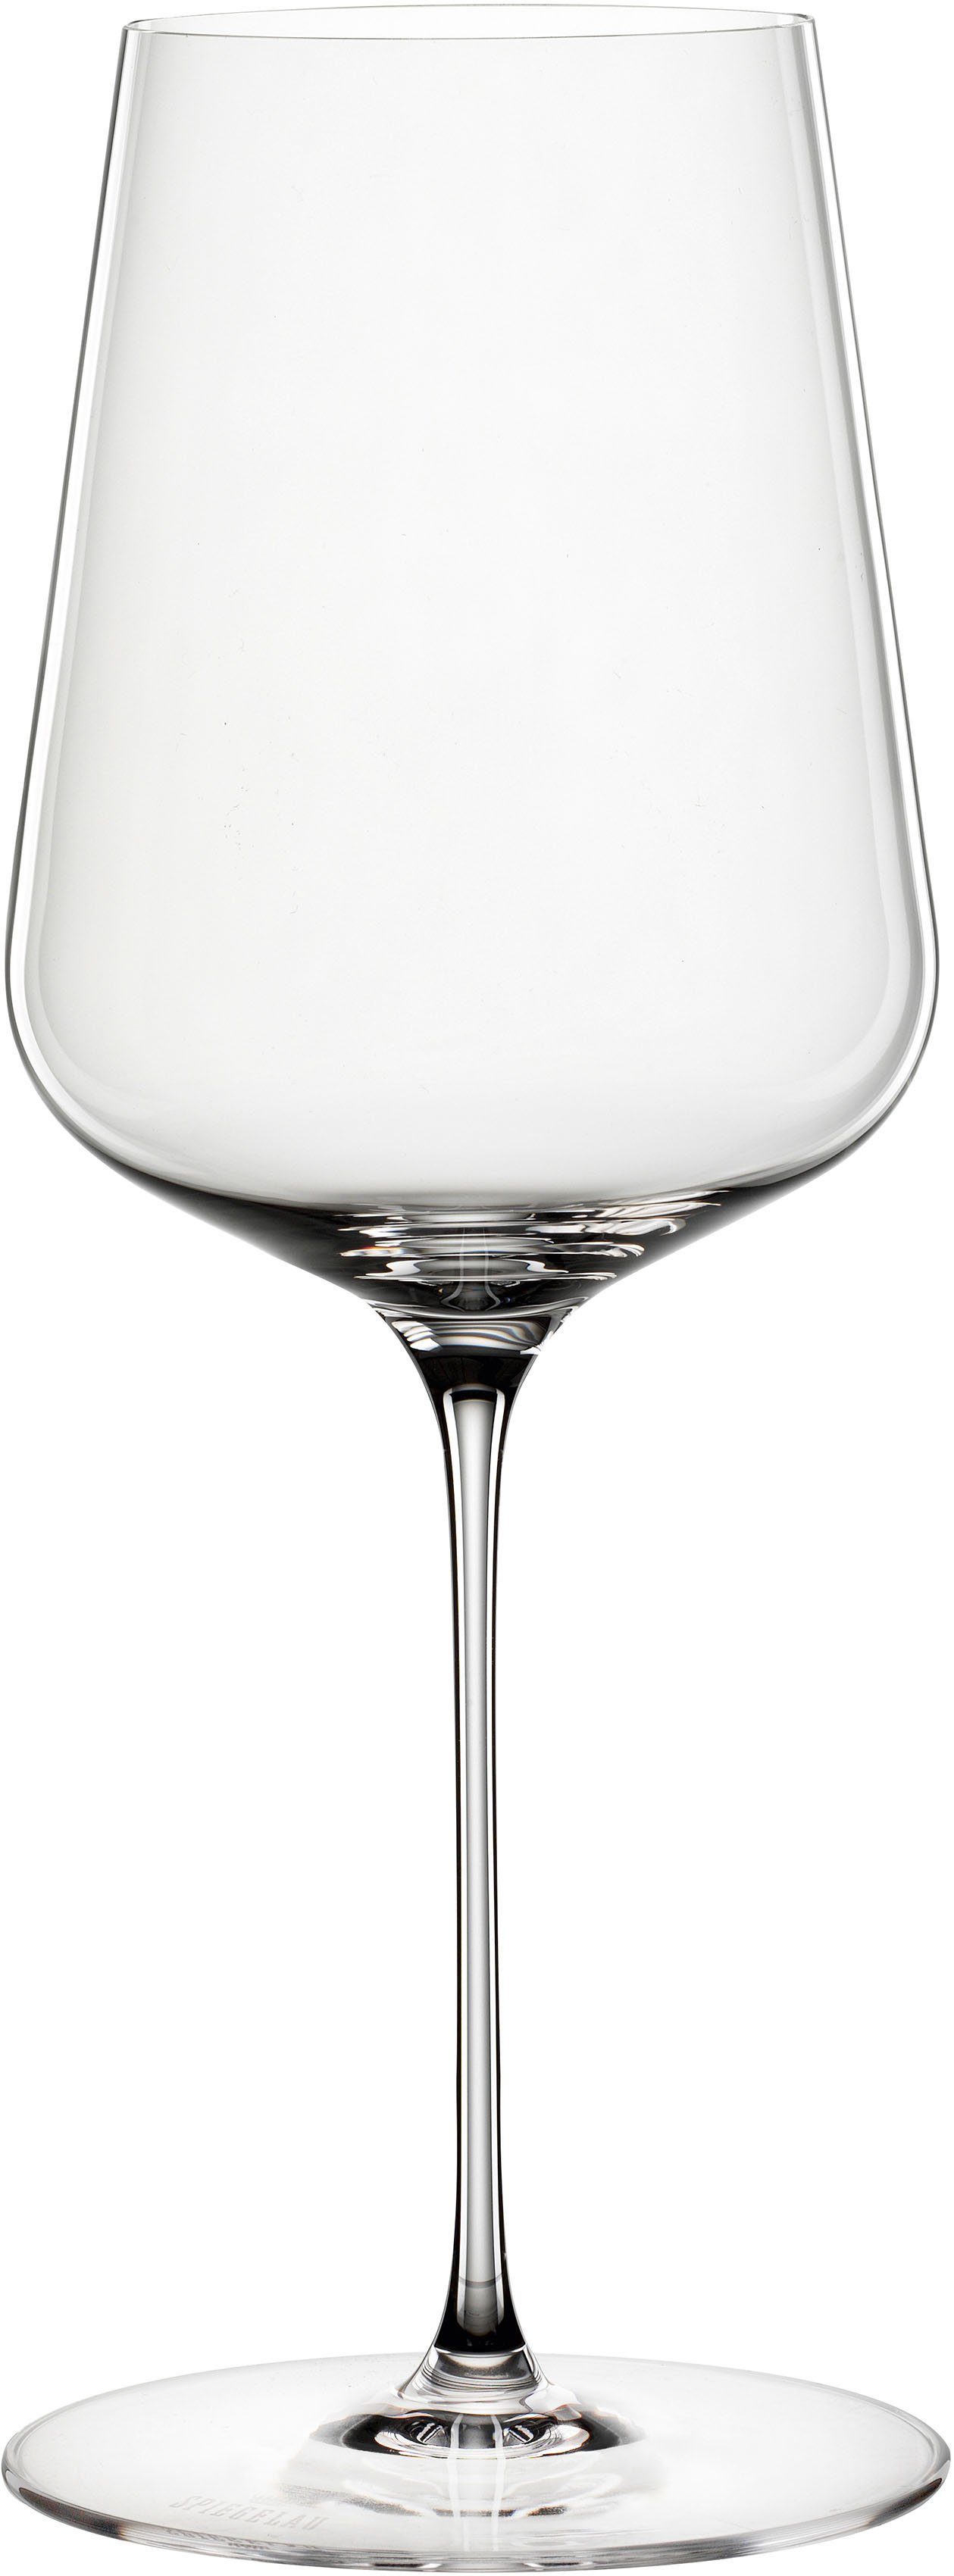 550 ml, Germany Definition, Made Kristallglas, in SPIEGELAU 2-teilig, Weinglas